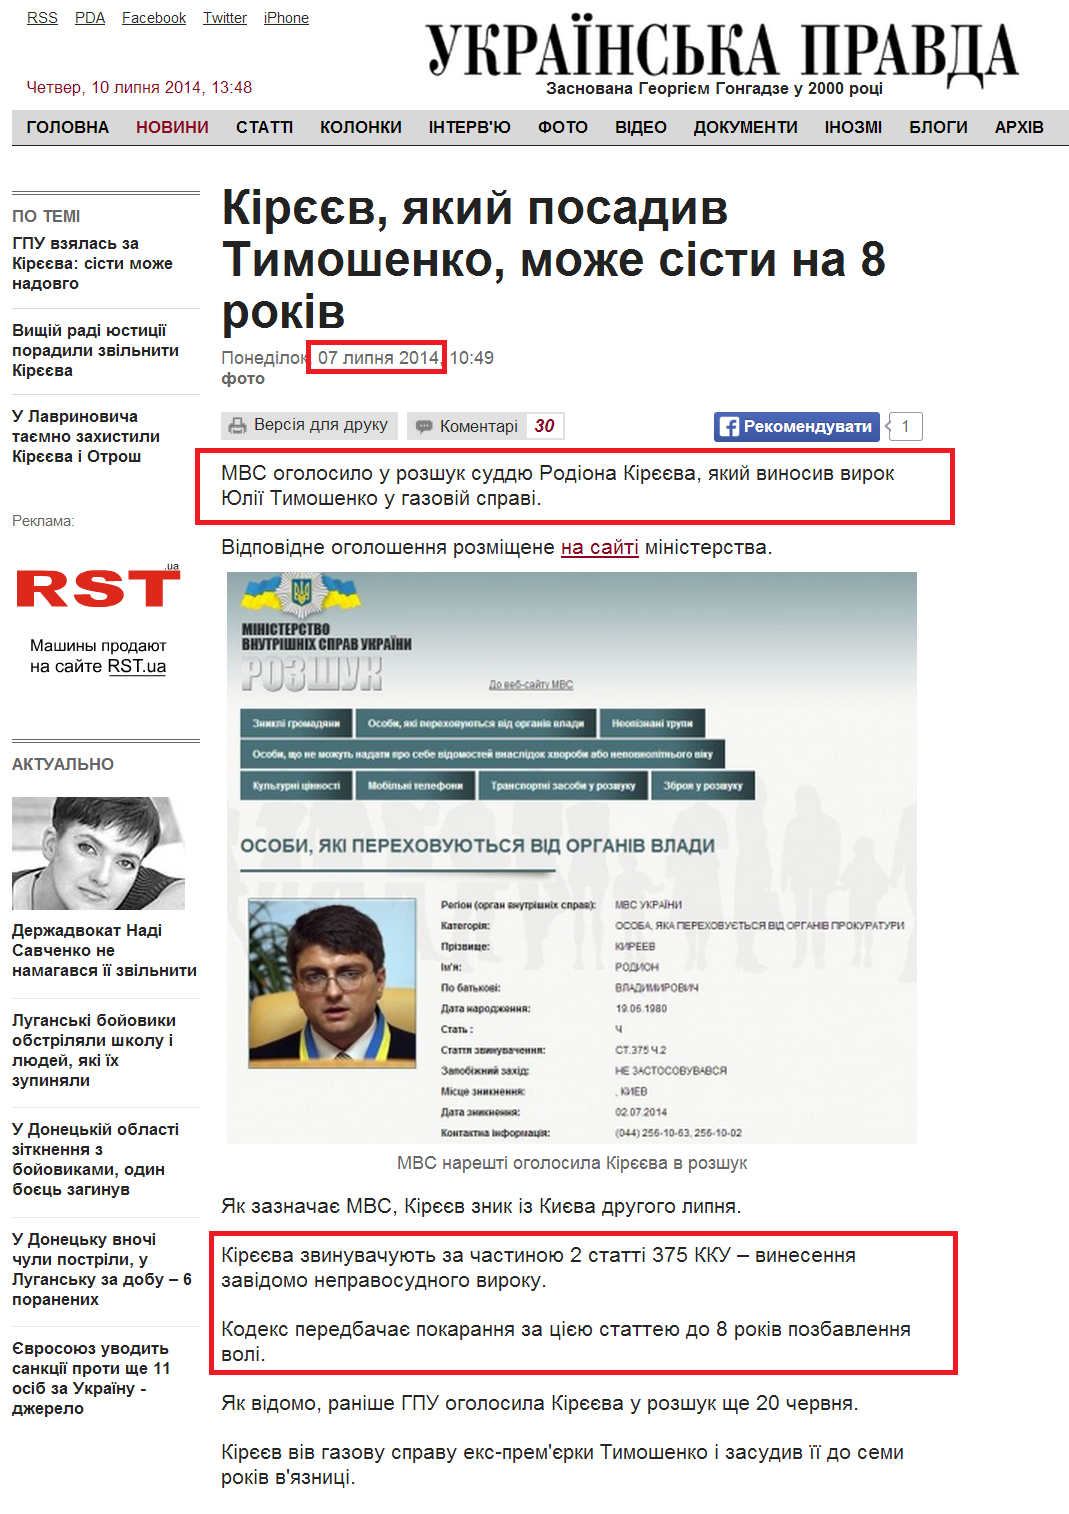 http://www.pravda.com.ua/news/2014/07/7/7031170/